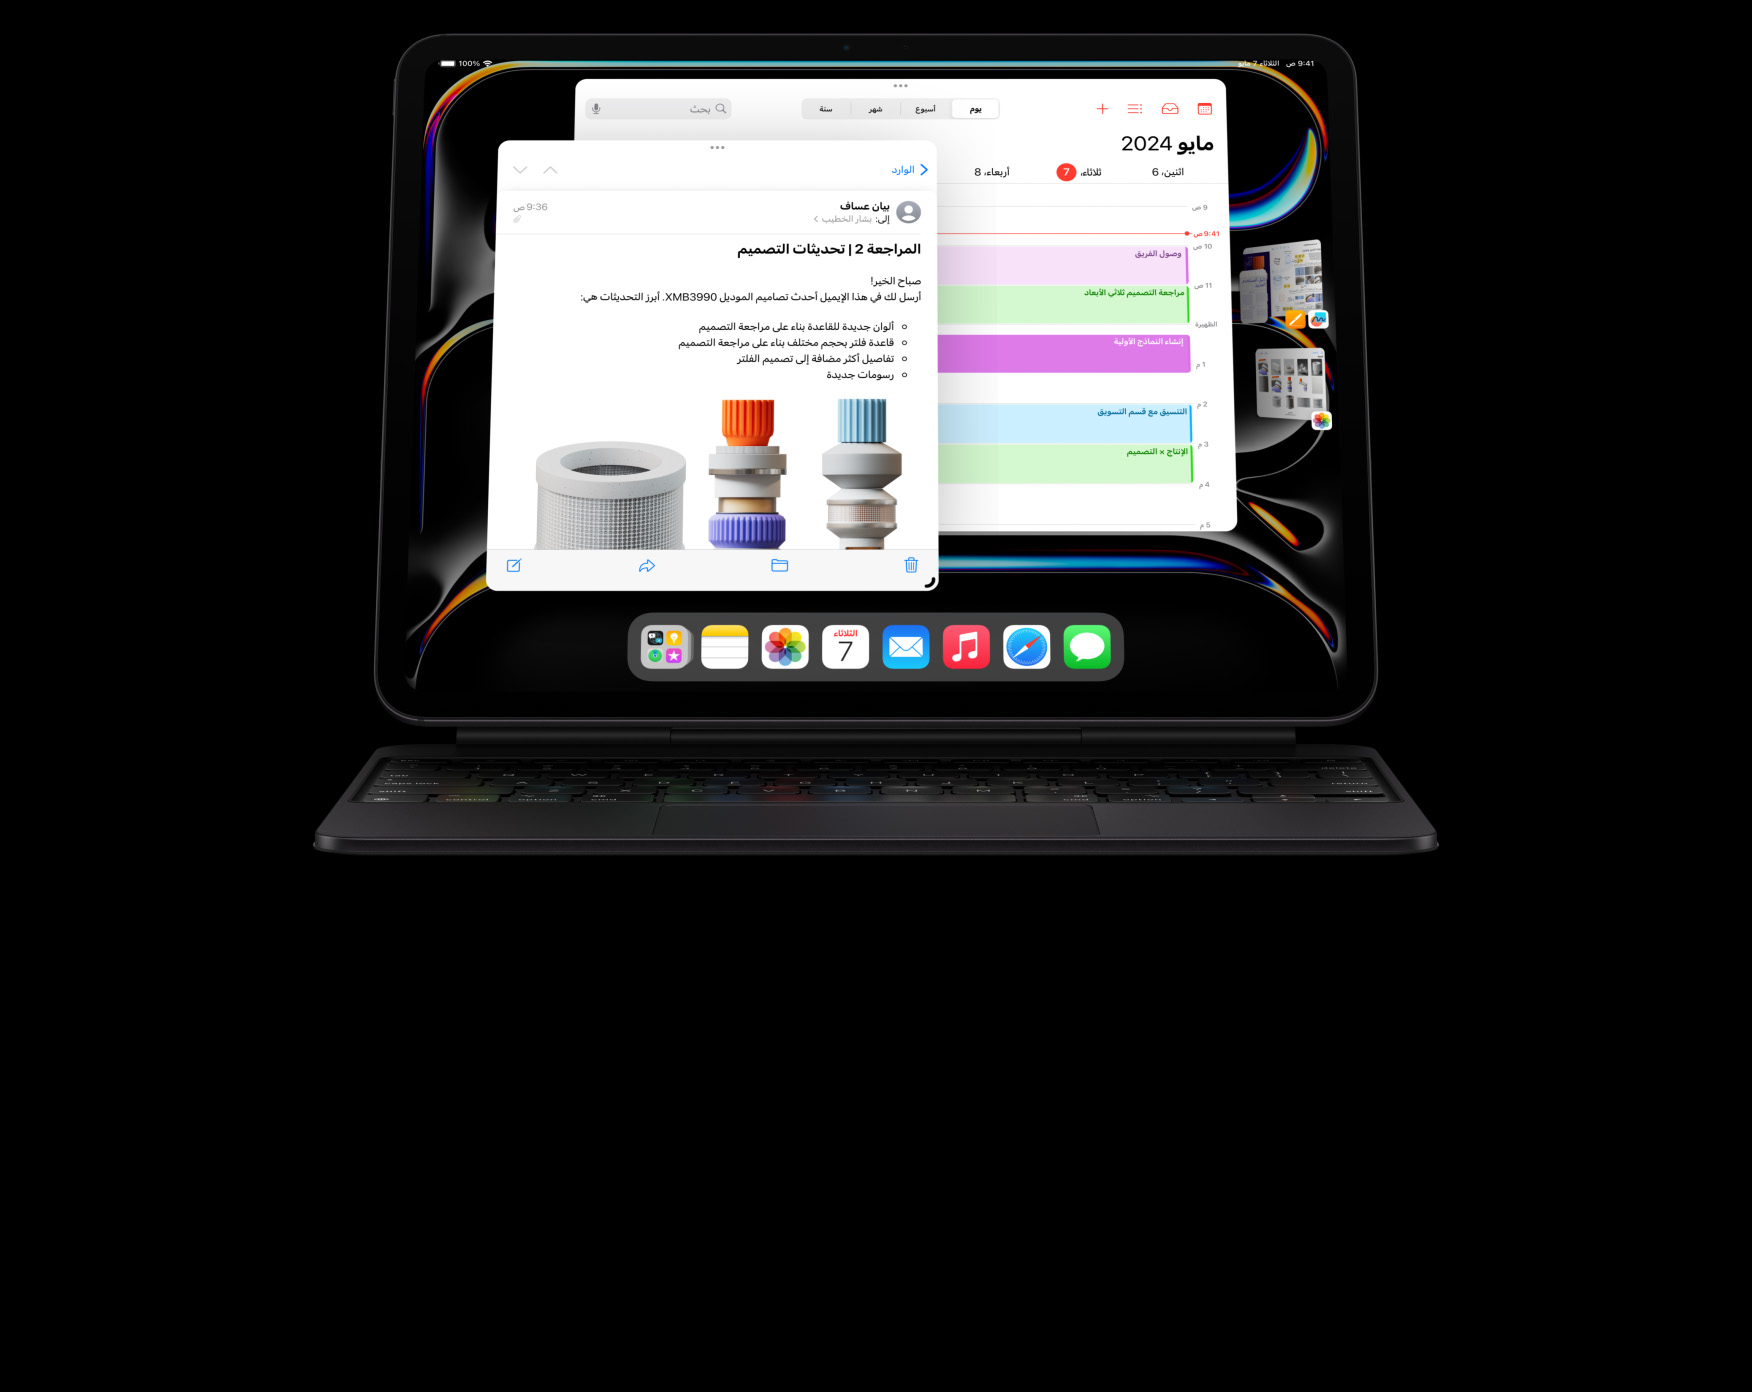 جهاز iPad مثبت على لوحة مفاتيح ماجيك في الوضع الأفقي، يقوم المستخدم بمهام متعددة مع تطبيقات متعددة مفتوحة